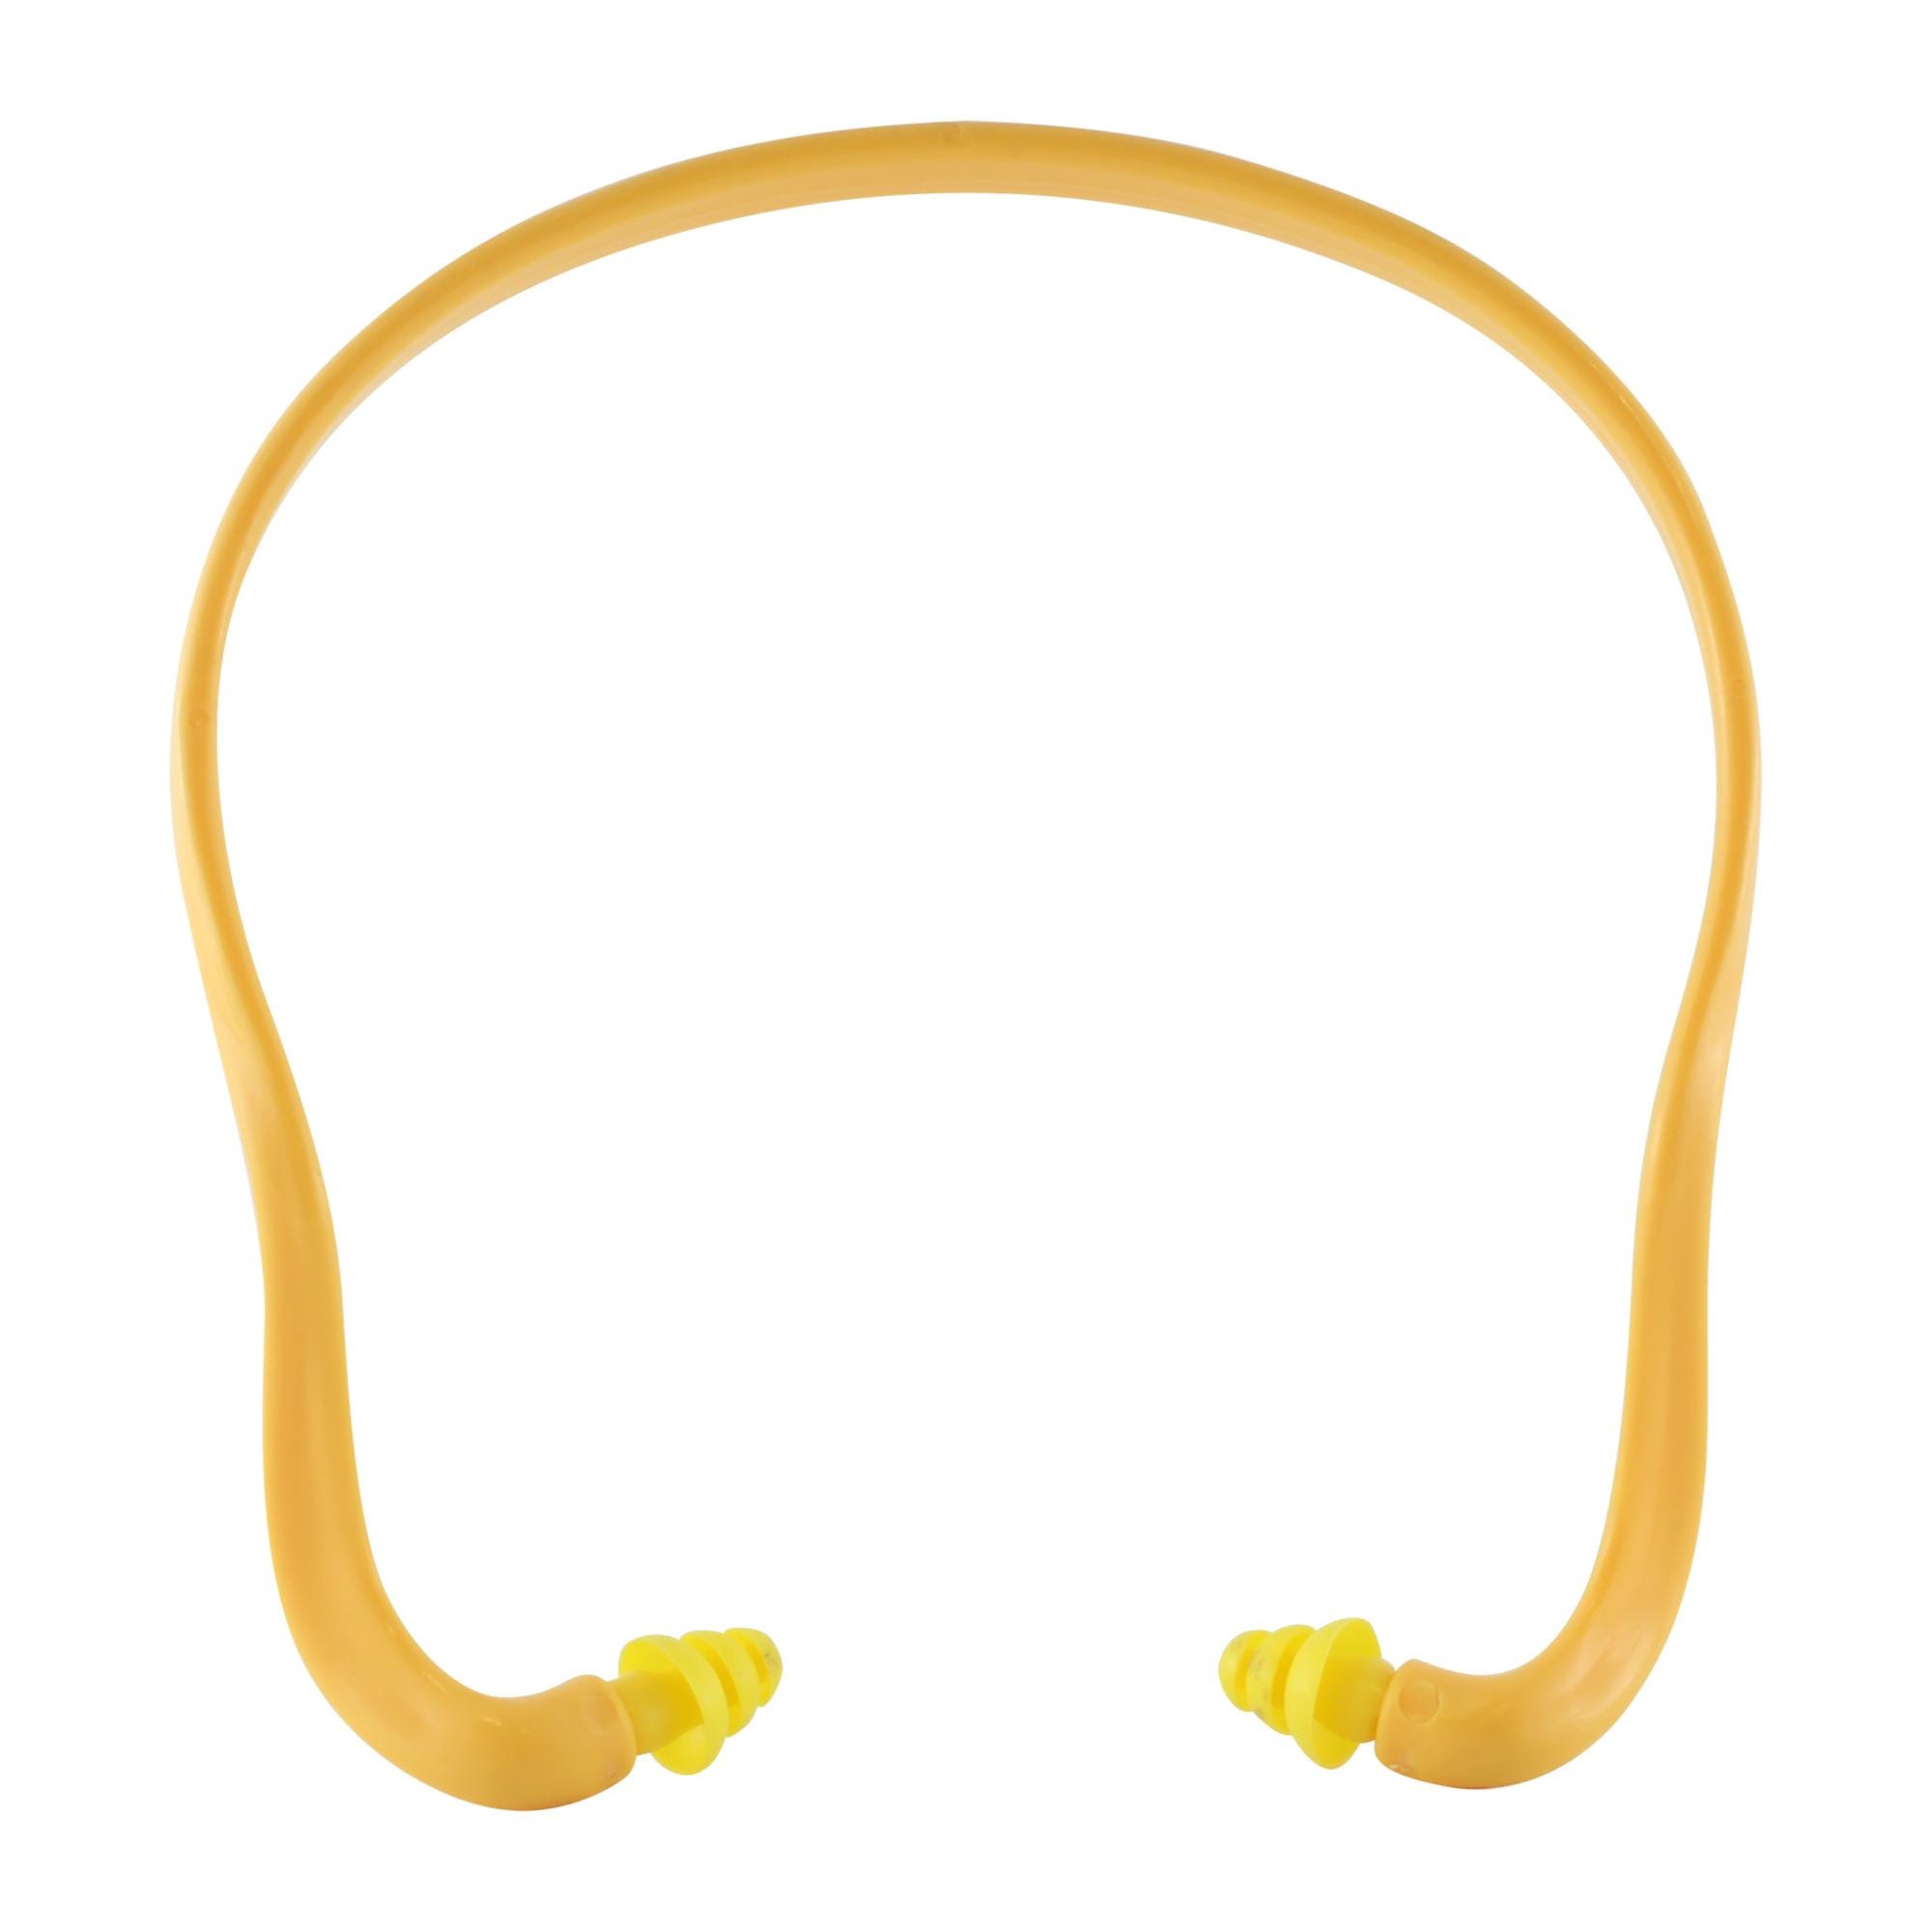 Bouchon d'oreille anti-bruit professionnel réutilisables en TPR (10 paires)  - DELTA PLUS